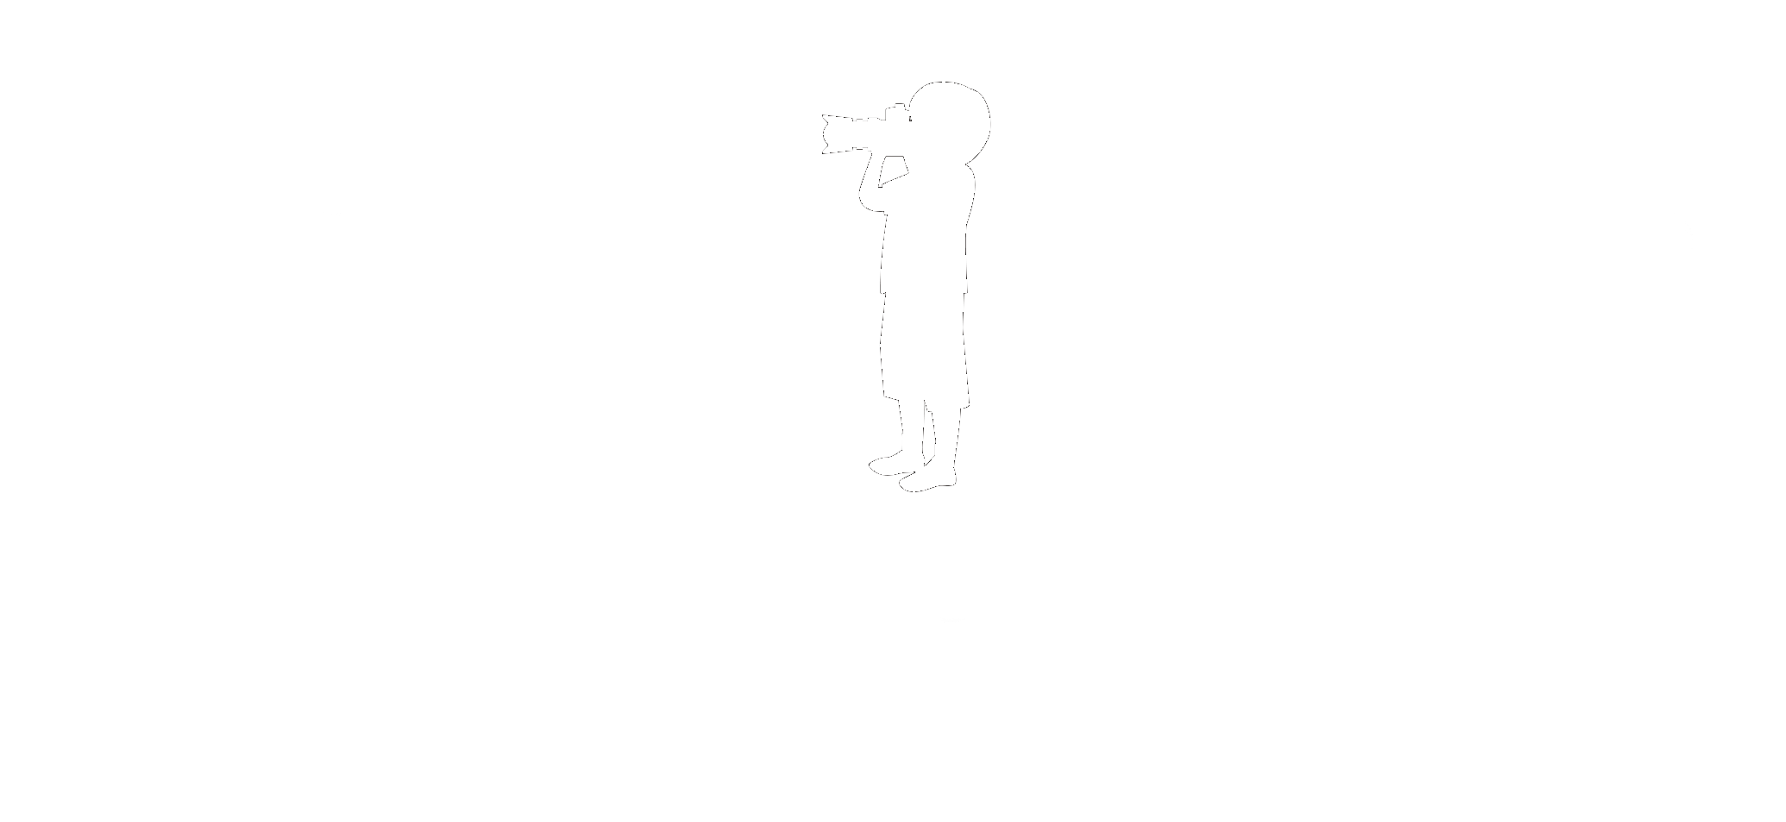 PhotoKAO/newbornphoto